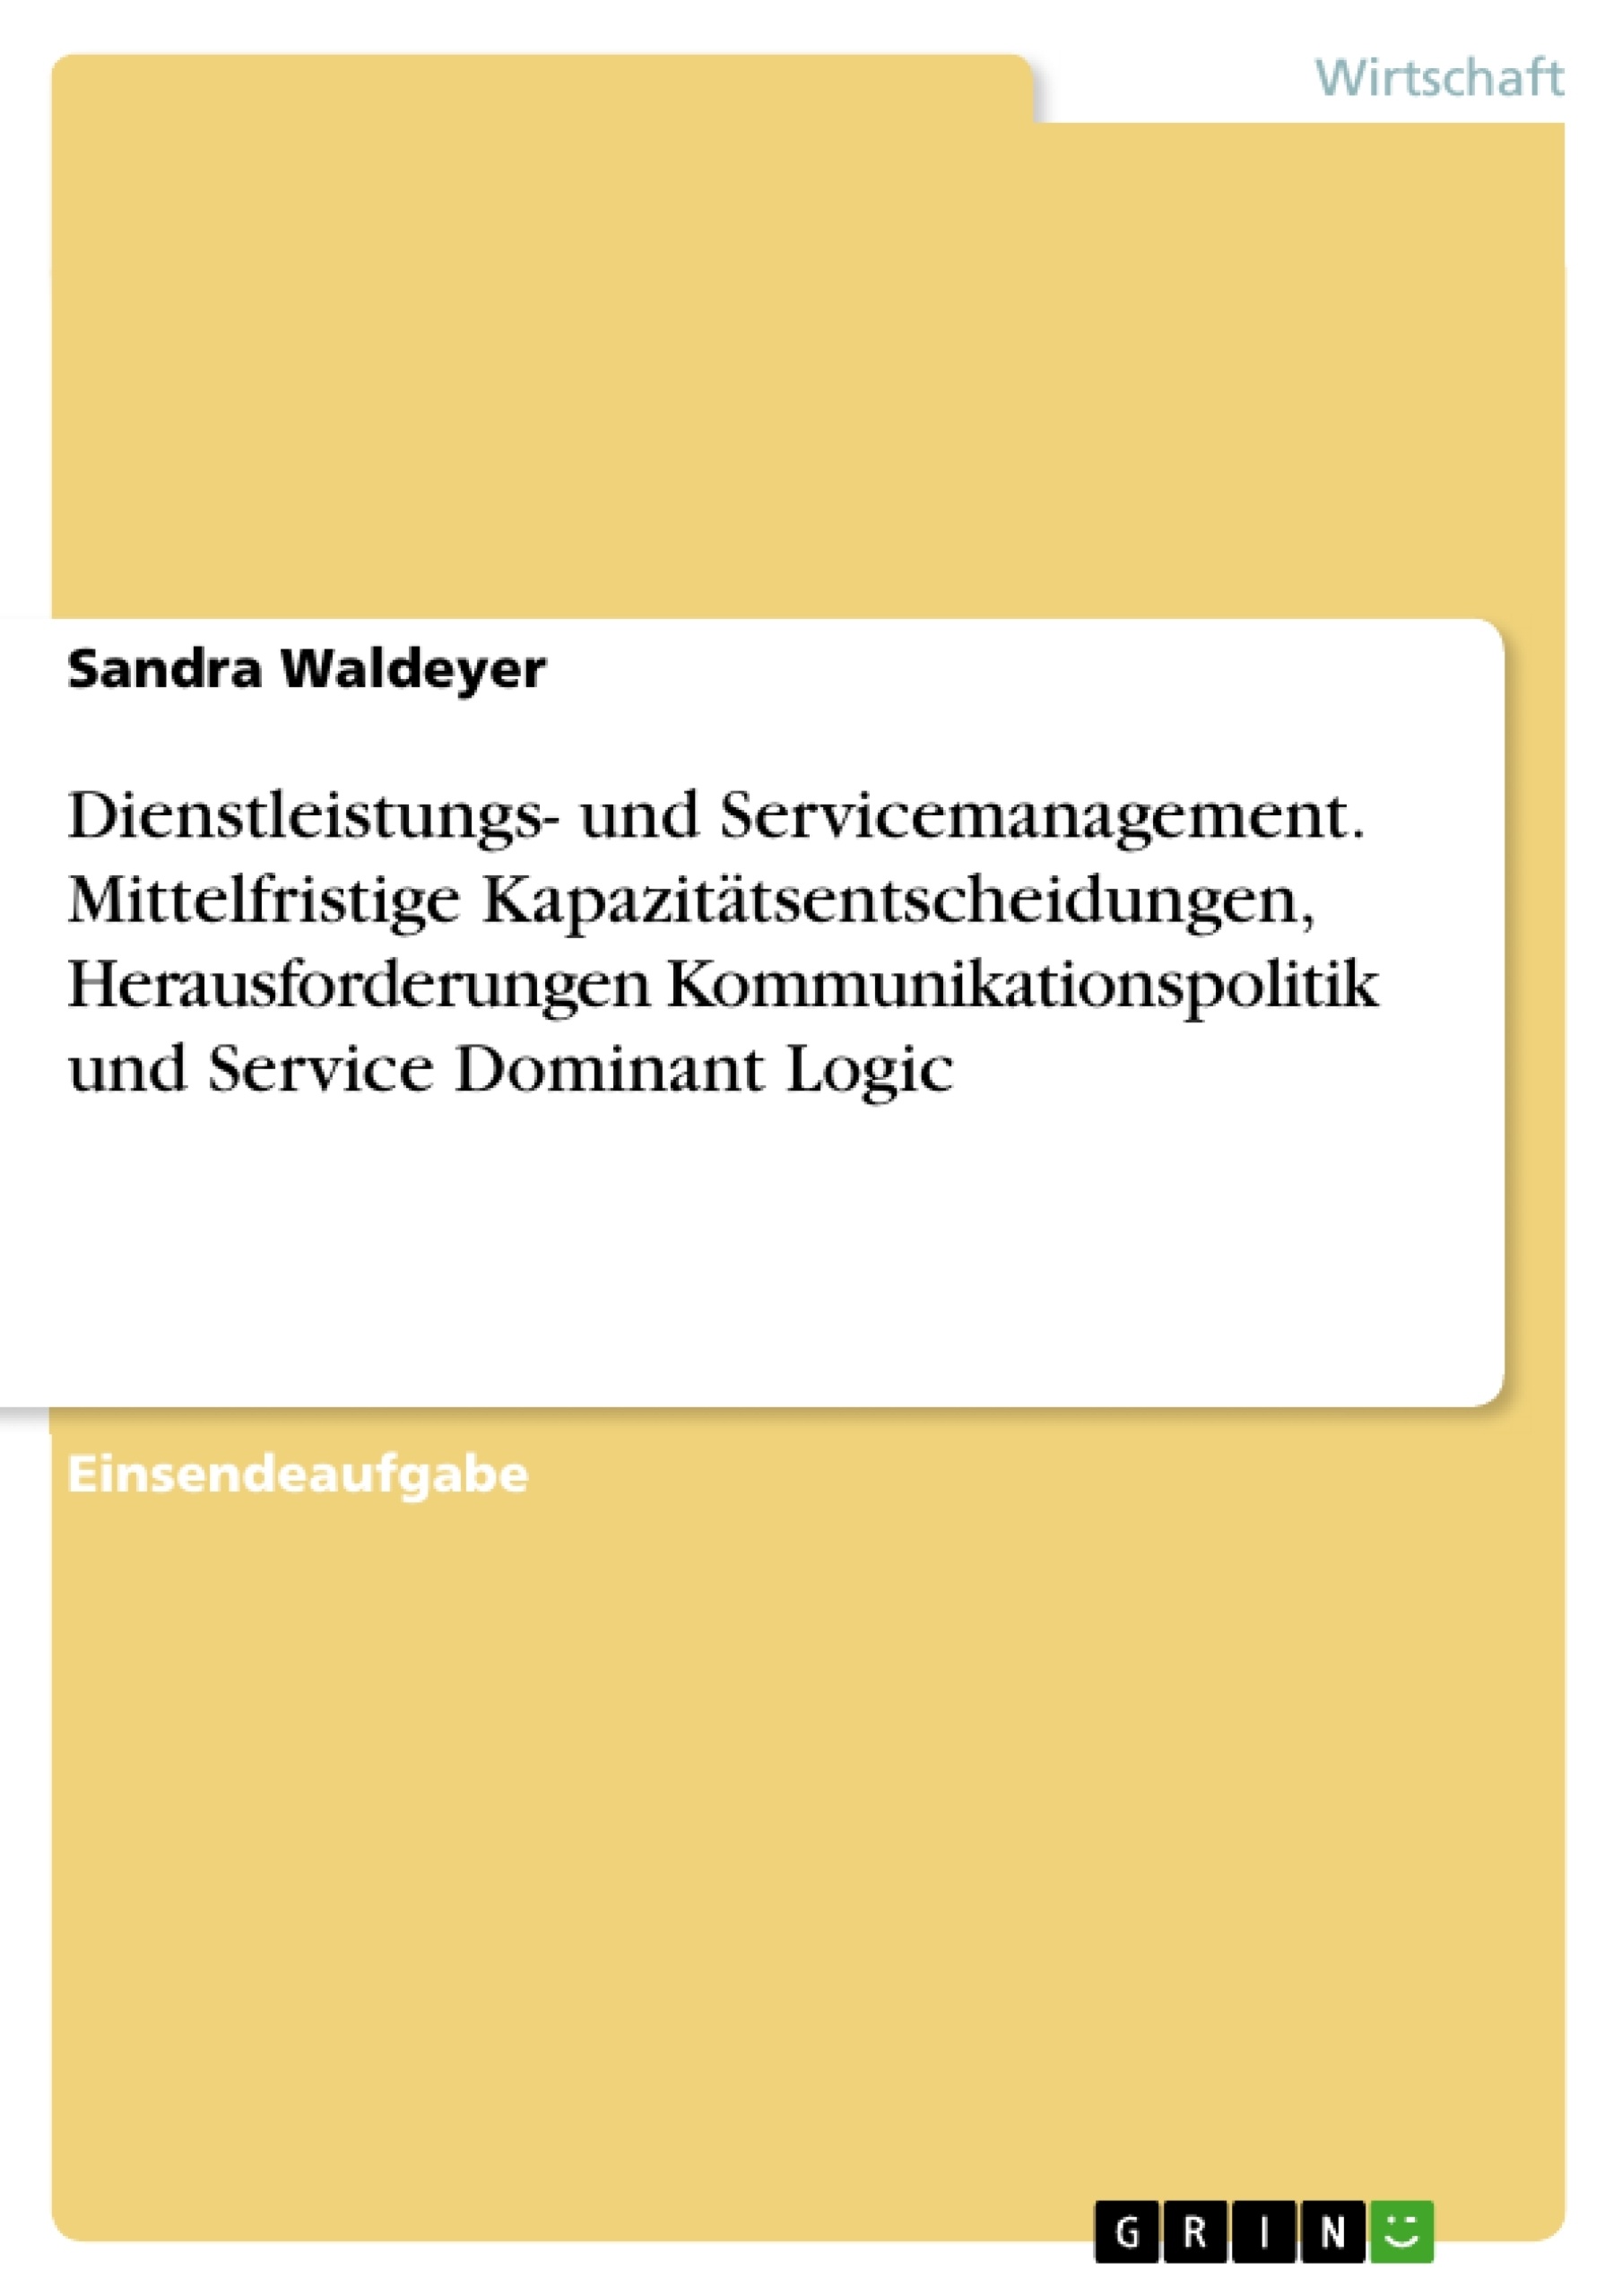 Título: Dienstleistungs- und Servicemanagement. Mittelfristige Kapazitätsentscheidungen, Herausforderungen Kommunikationspolitik und Service Dominant Logic